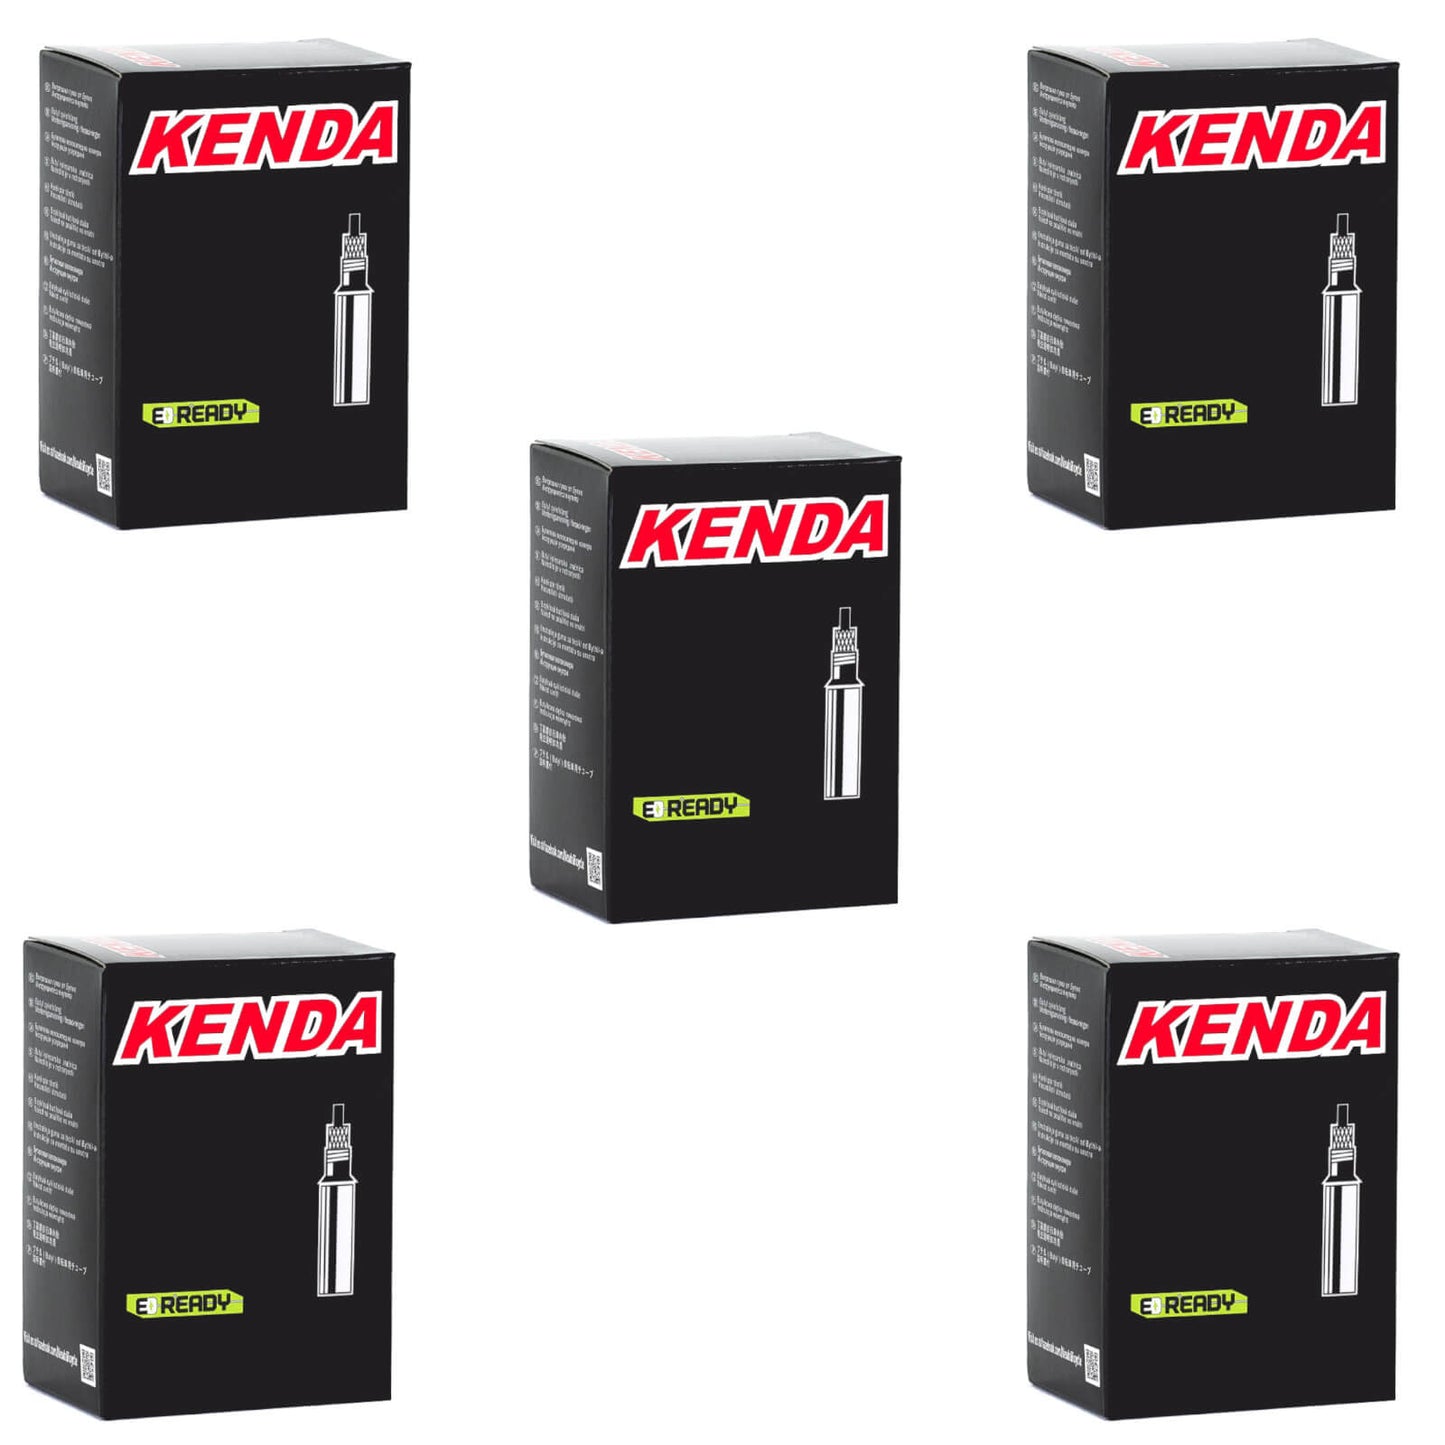 Kenda 700x20-28c 700c Presta Valve Bike Inner Tube Pack of 5